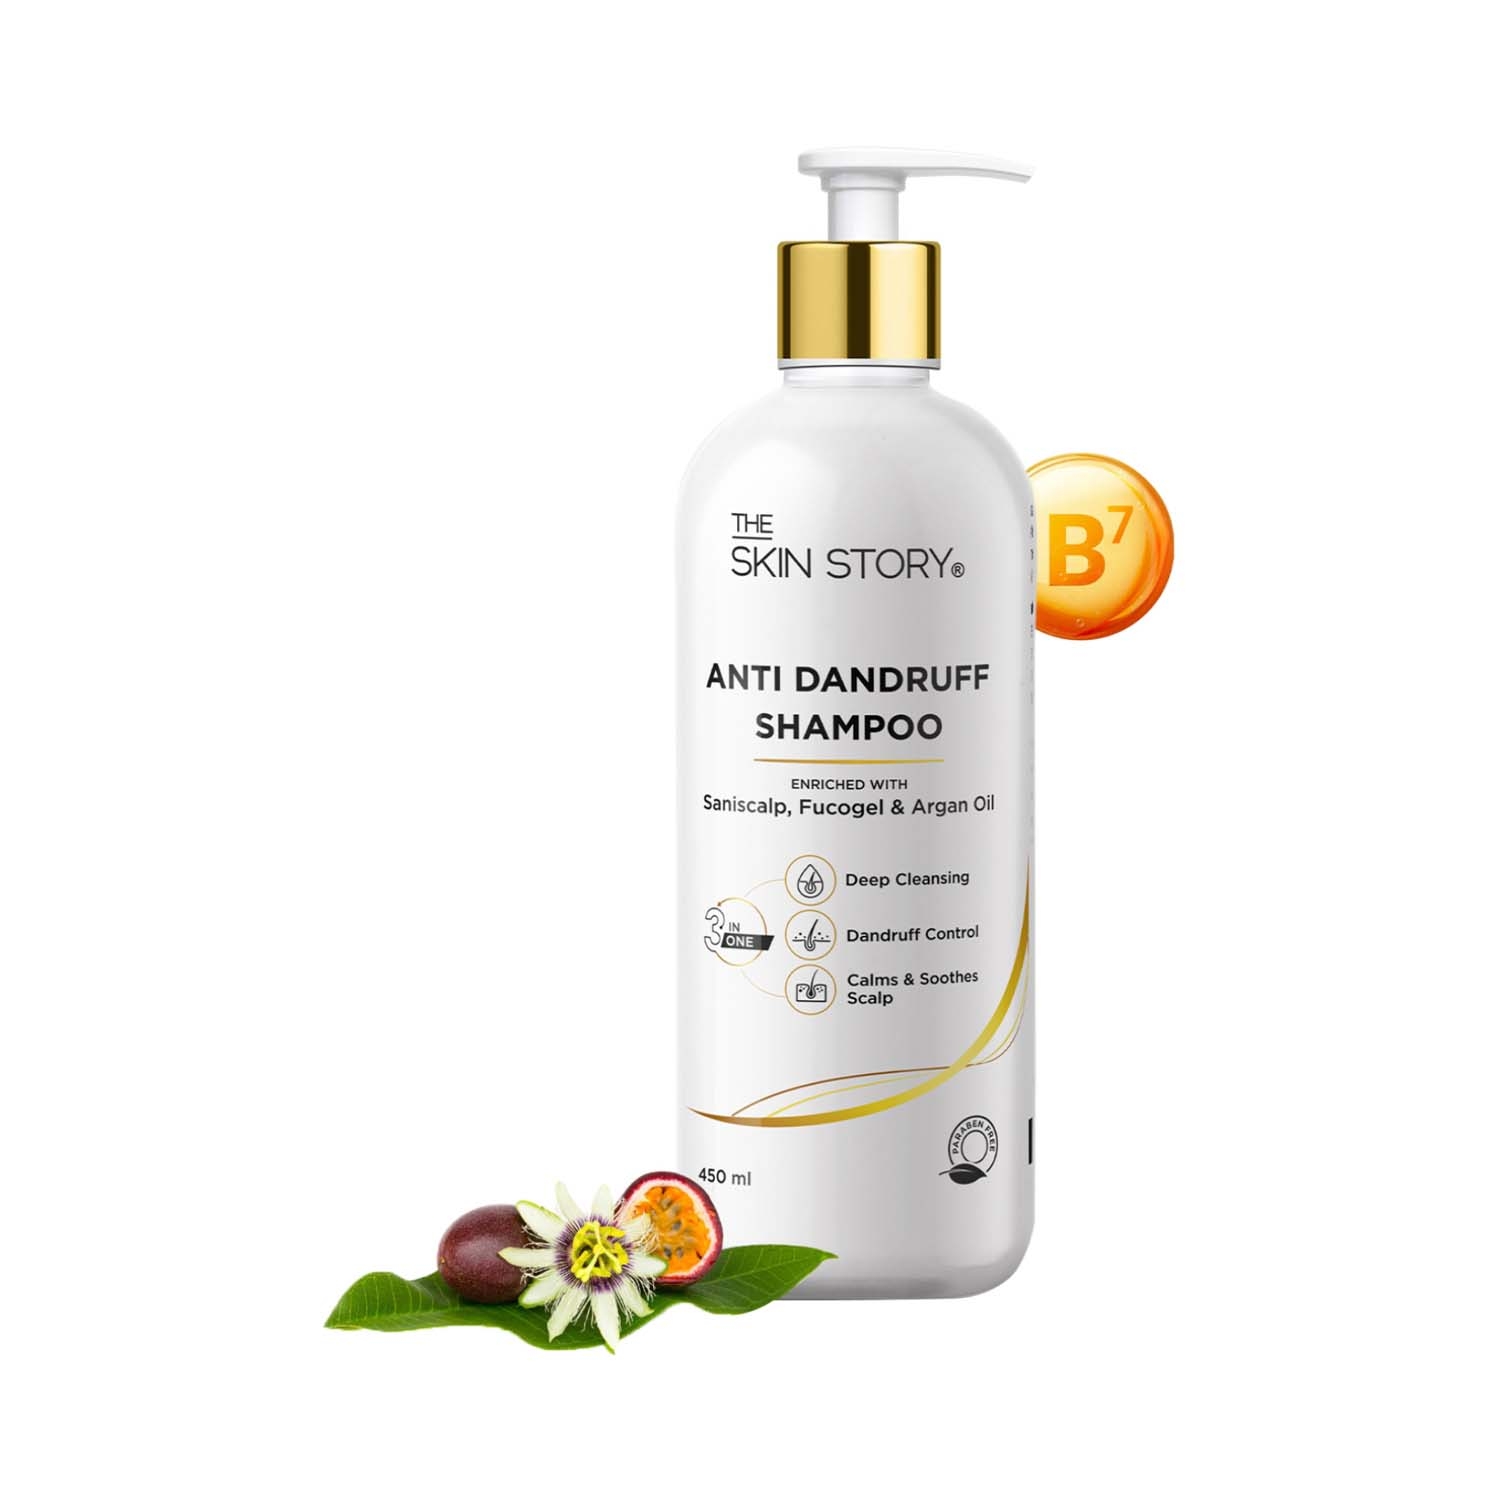 The Skin Story Anti Dandruff Shampoo (450ml)